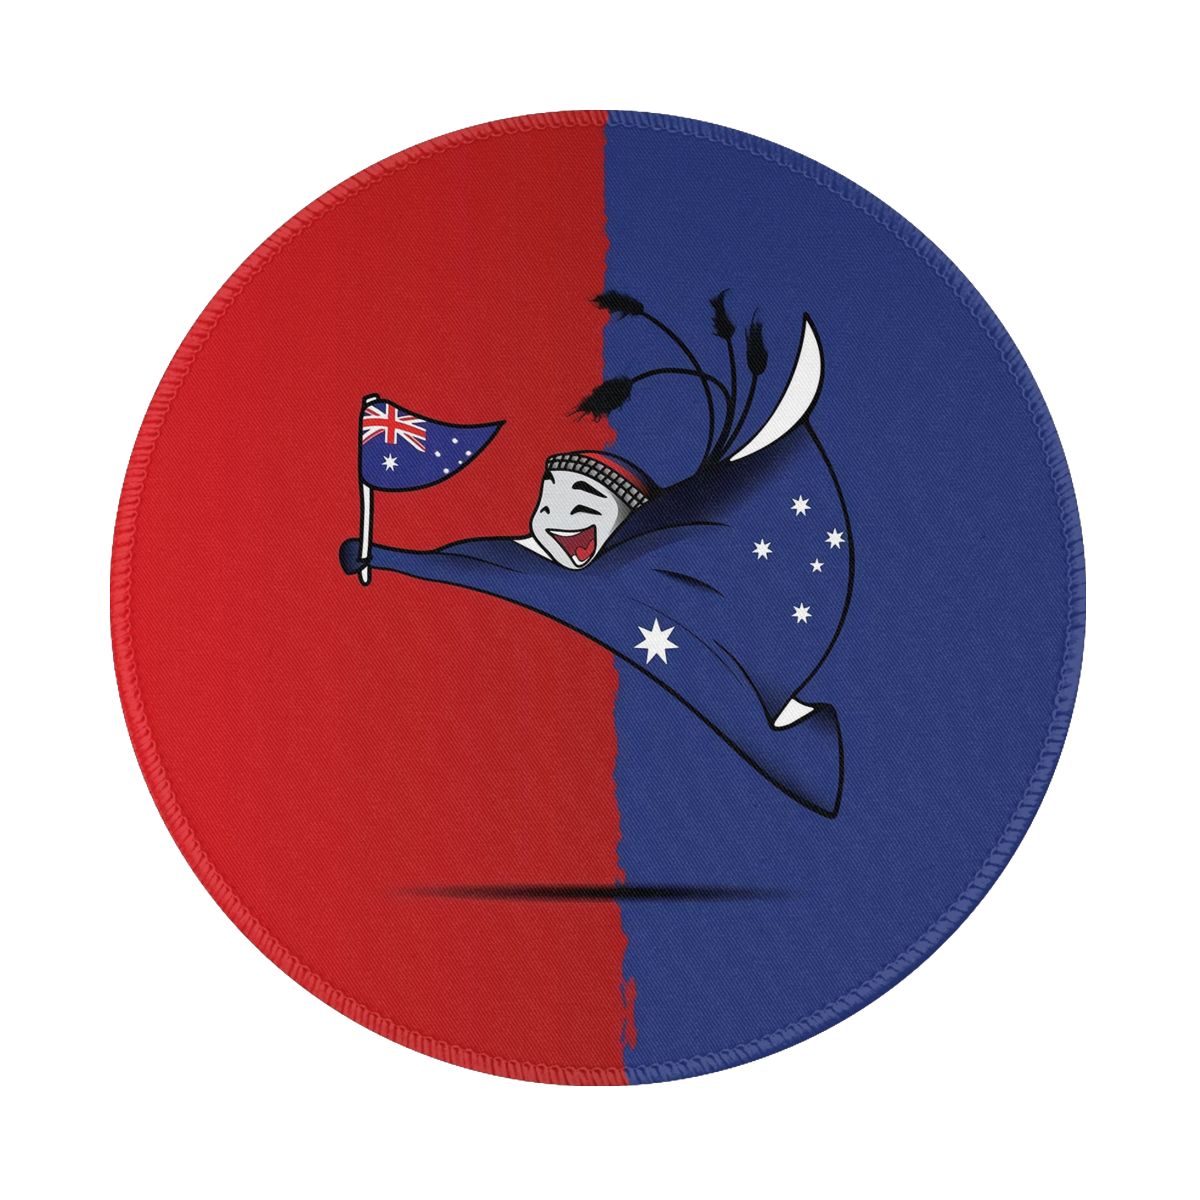 Australia World Cup 2022 Mascot Non-Slip Rubber Round Mouse Pad